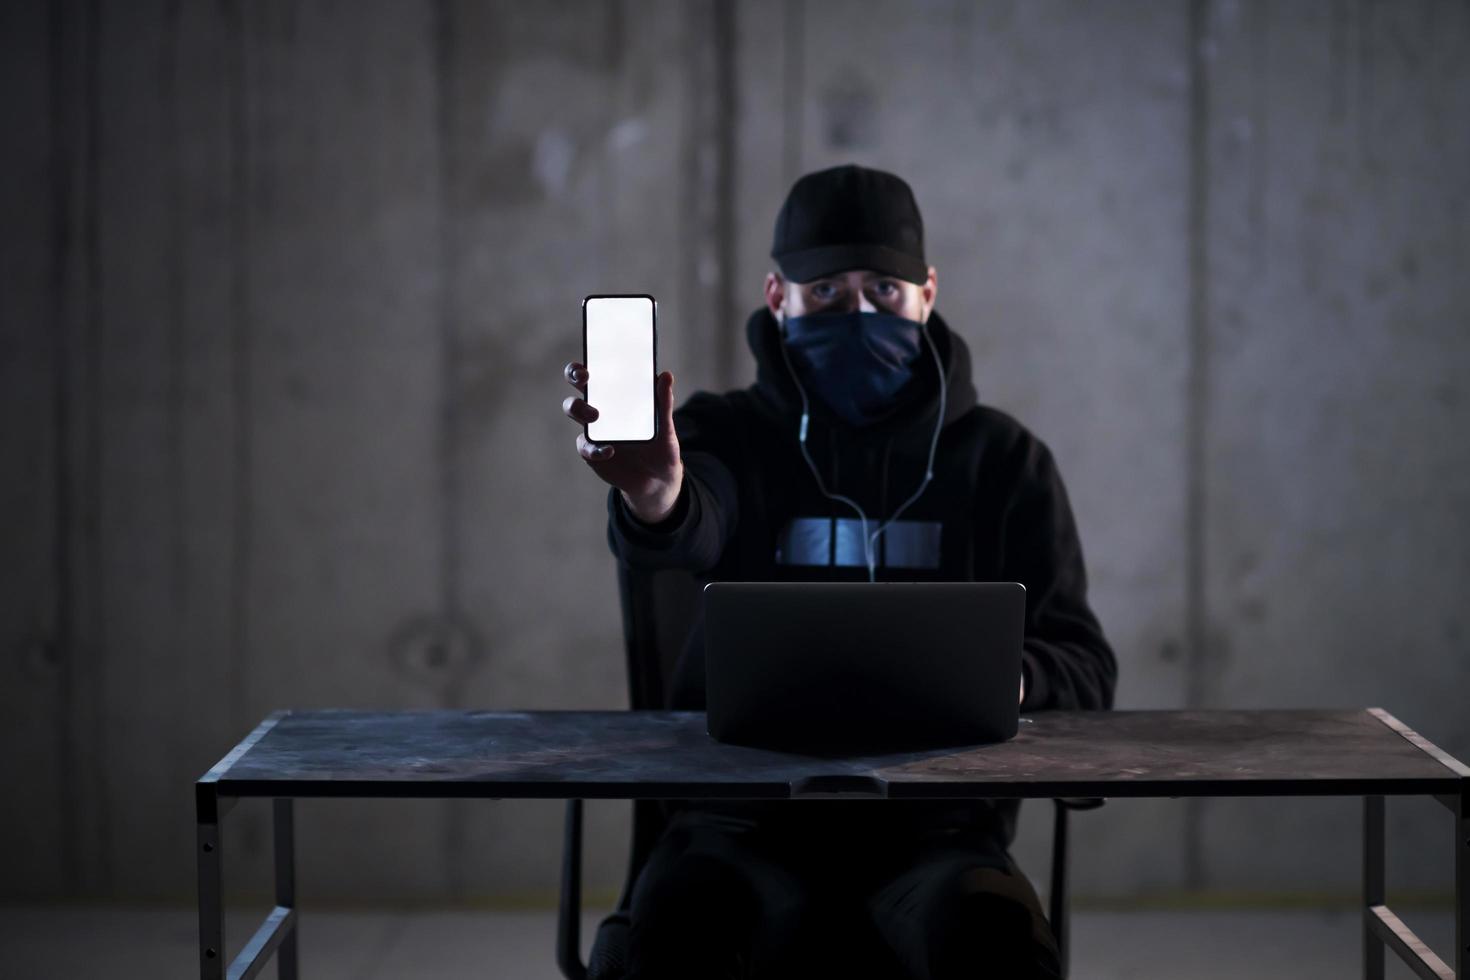 pirate informatique criminel utilisant un ordinateur portable tout en travaillant dans un bureau sombre photo